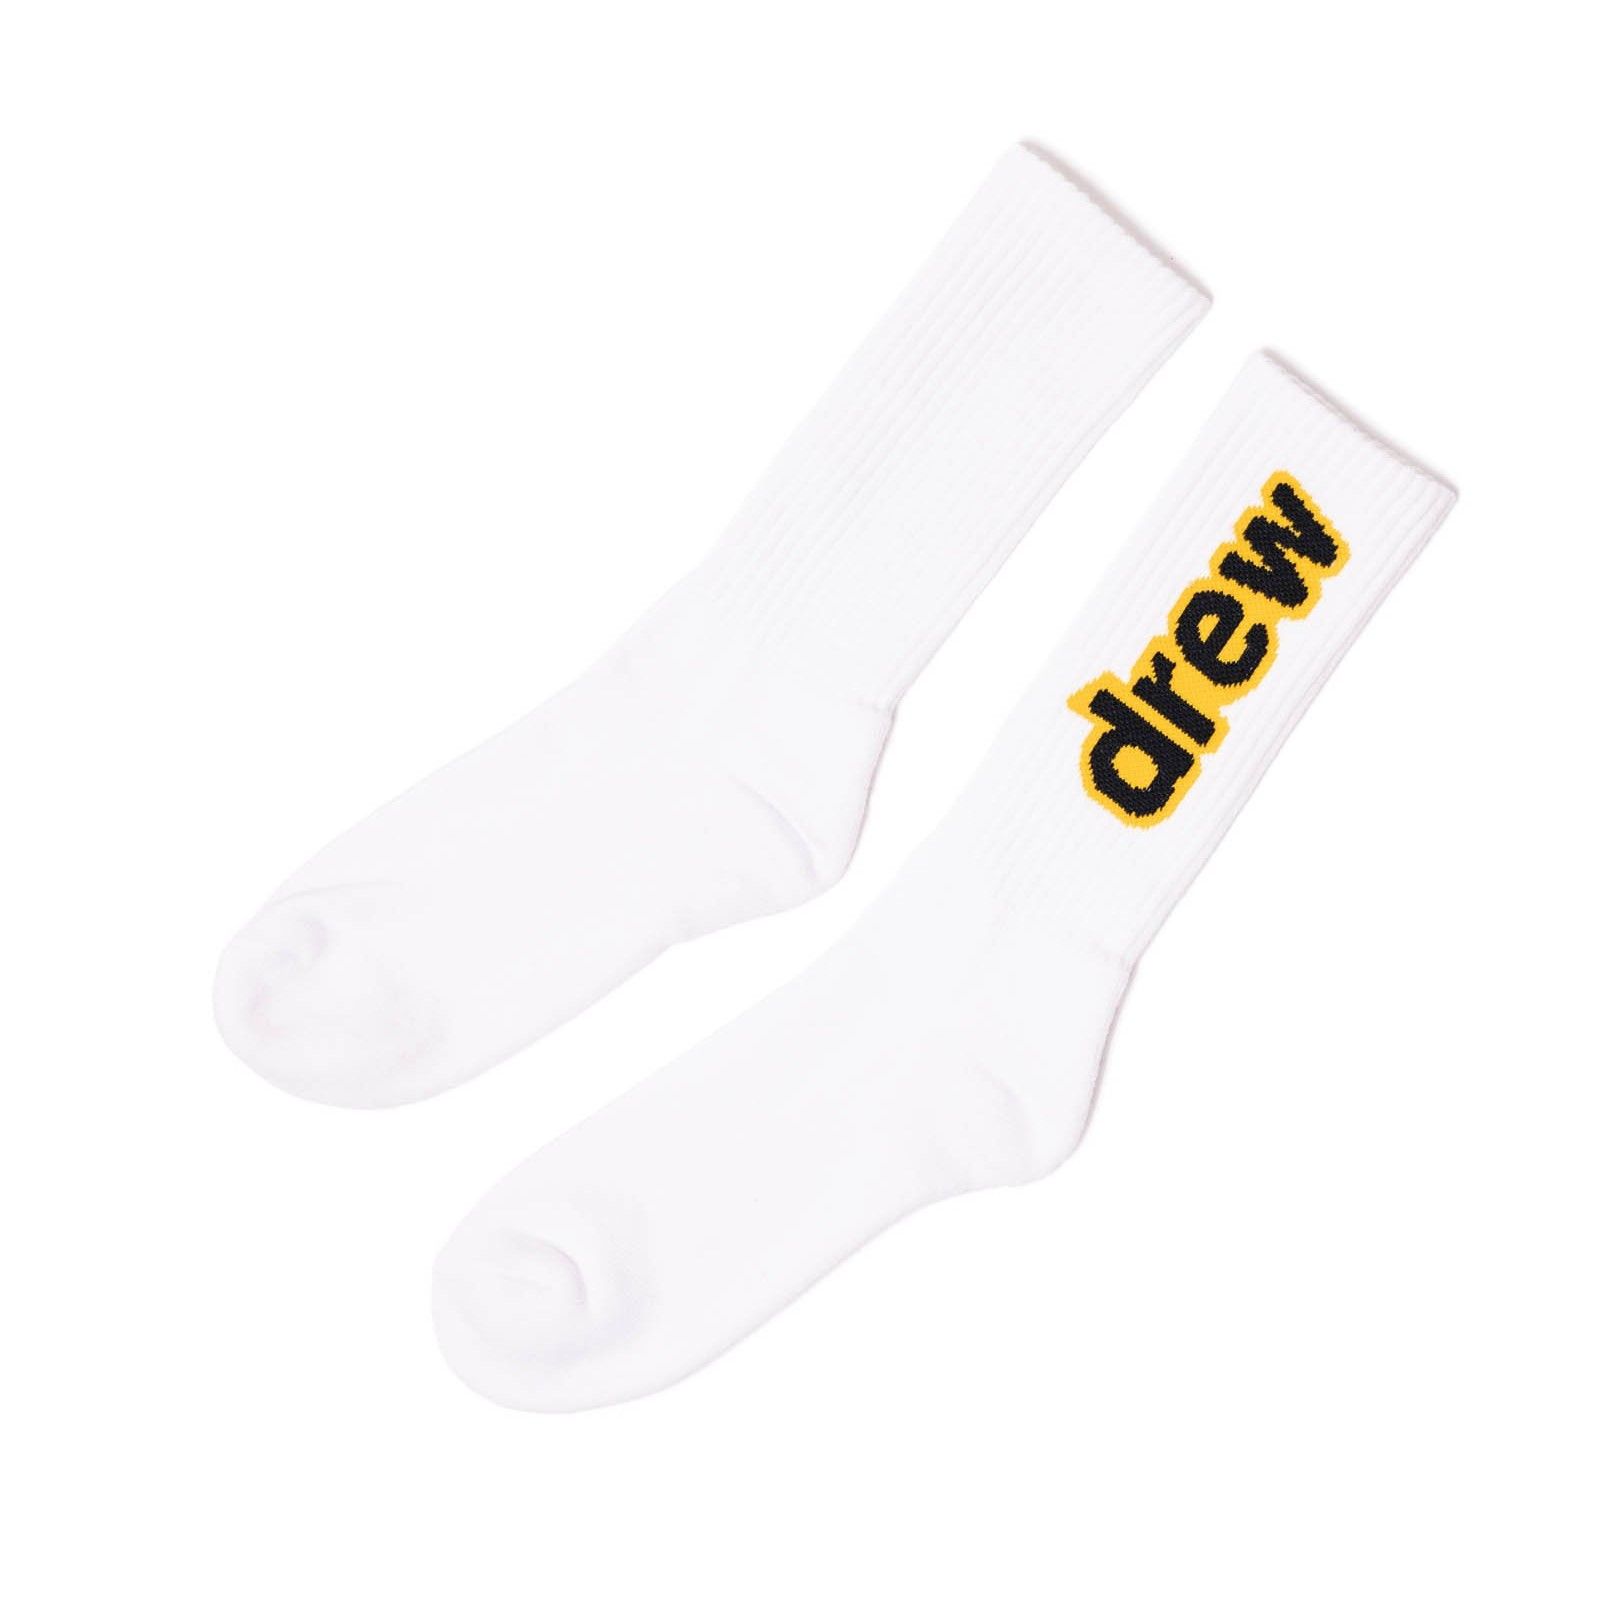  Drew House Secret Socks - White 